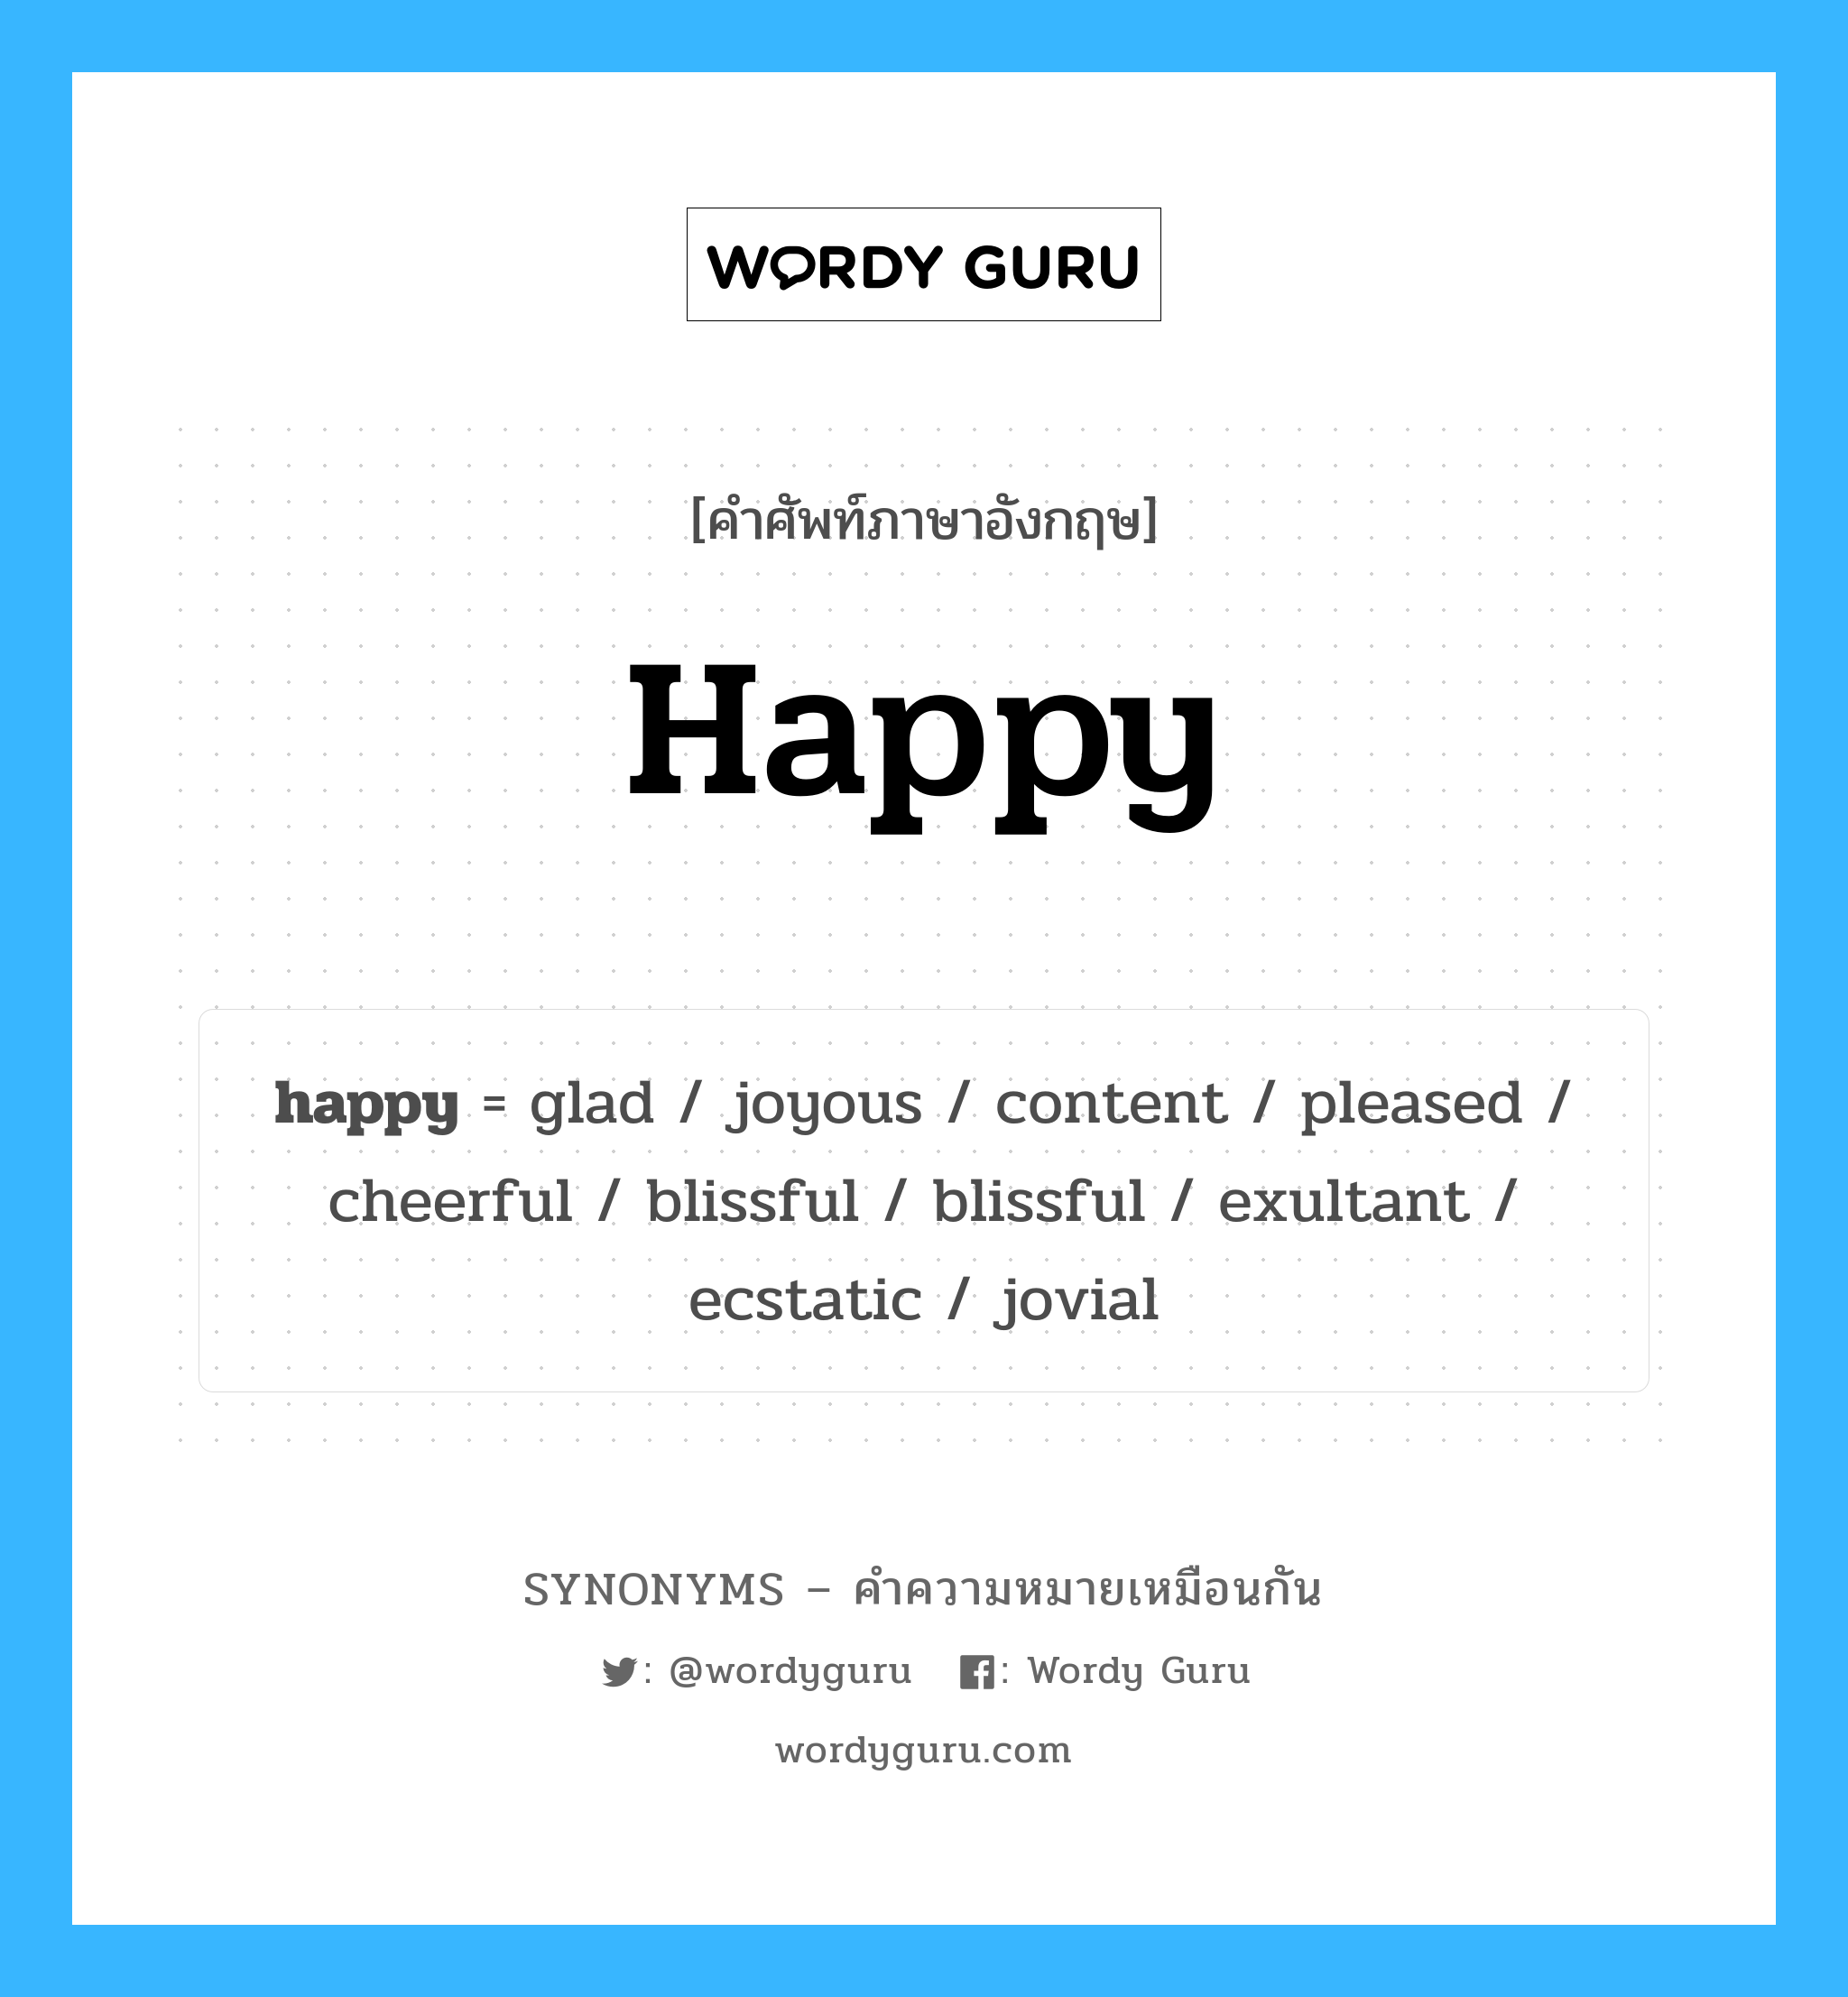 blissful เป็นหนึ่งใน happy และมีคำอื่น ๆ อีกดังนี้, คำศัพท์ภาษาอังกฤษ blissful ความหมายคล้ายกันกับ happy แปลว่า ความสุข หมวด happy